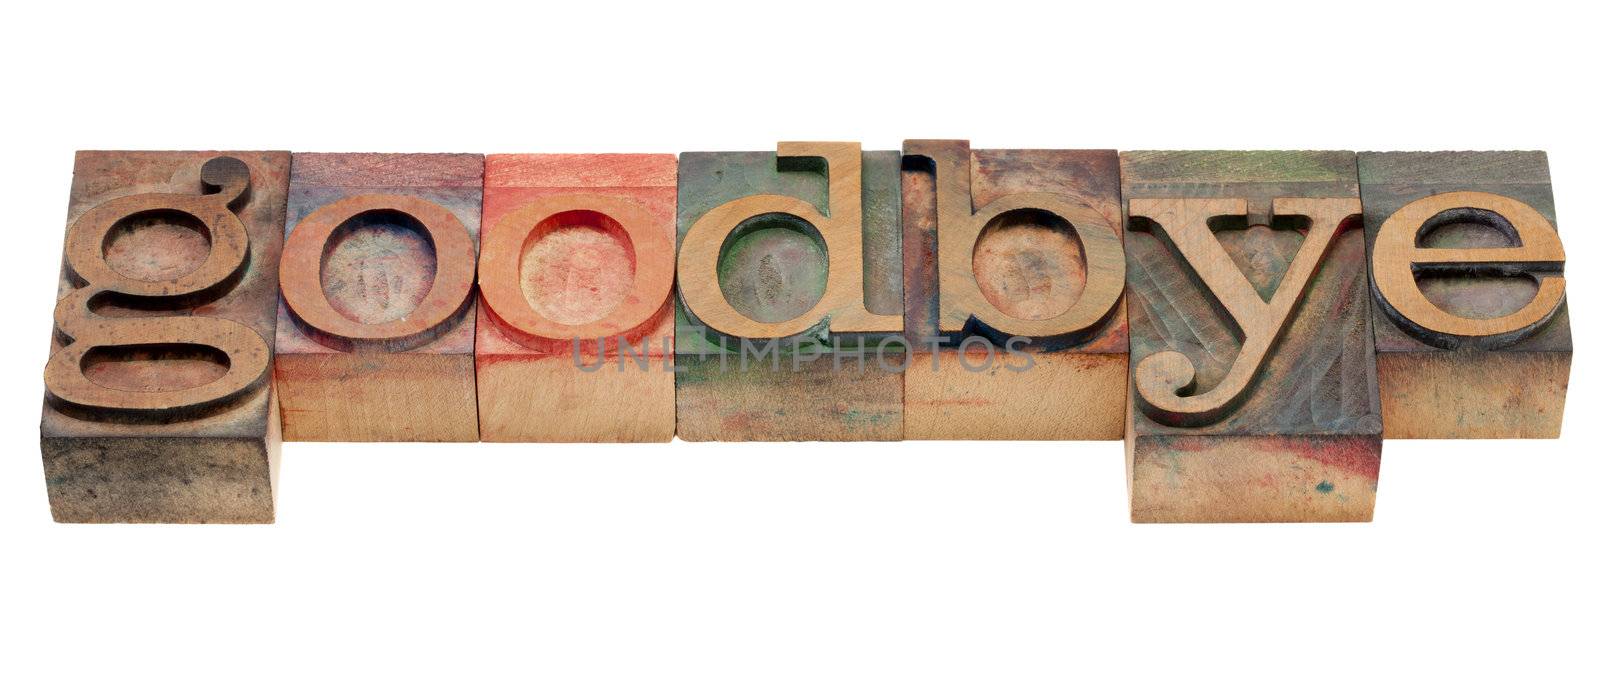 goodbye - word in wood letterpress type by PixelsAway